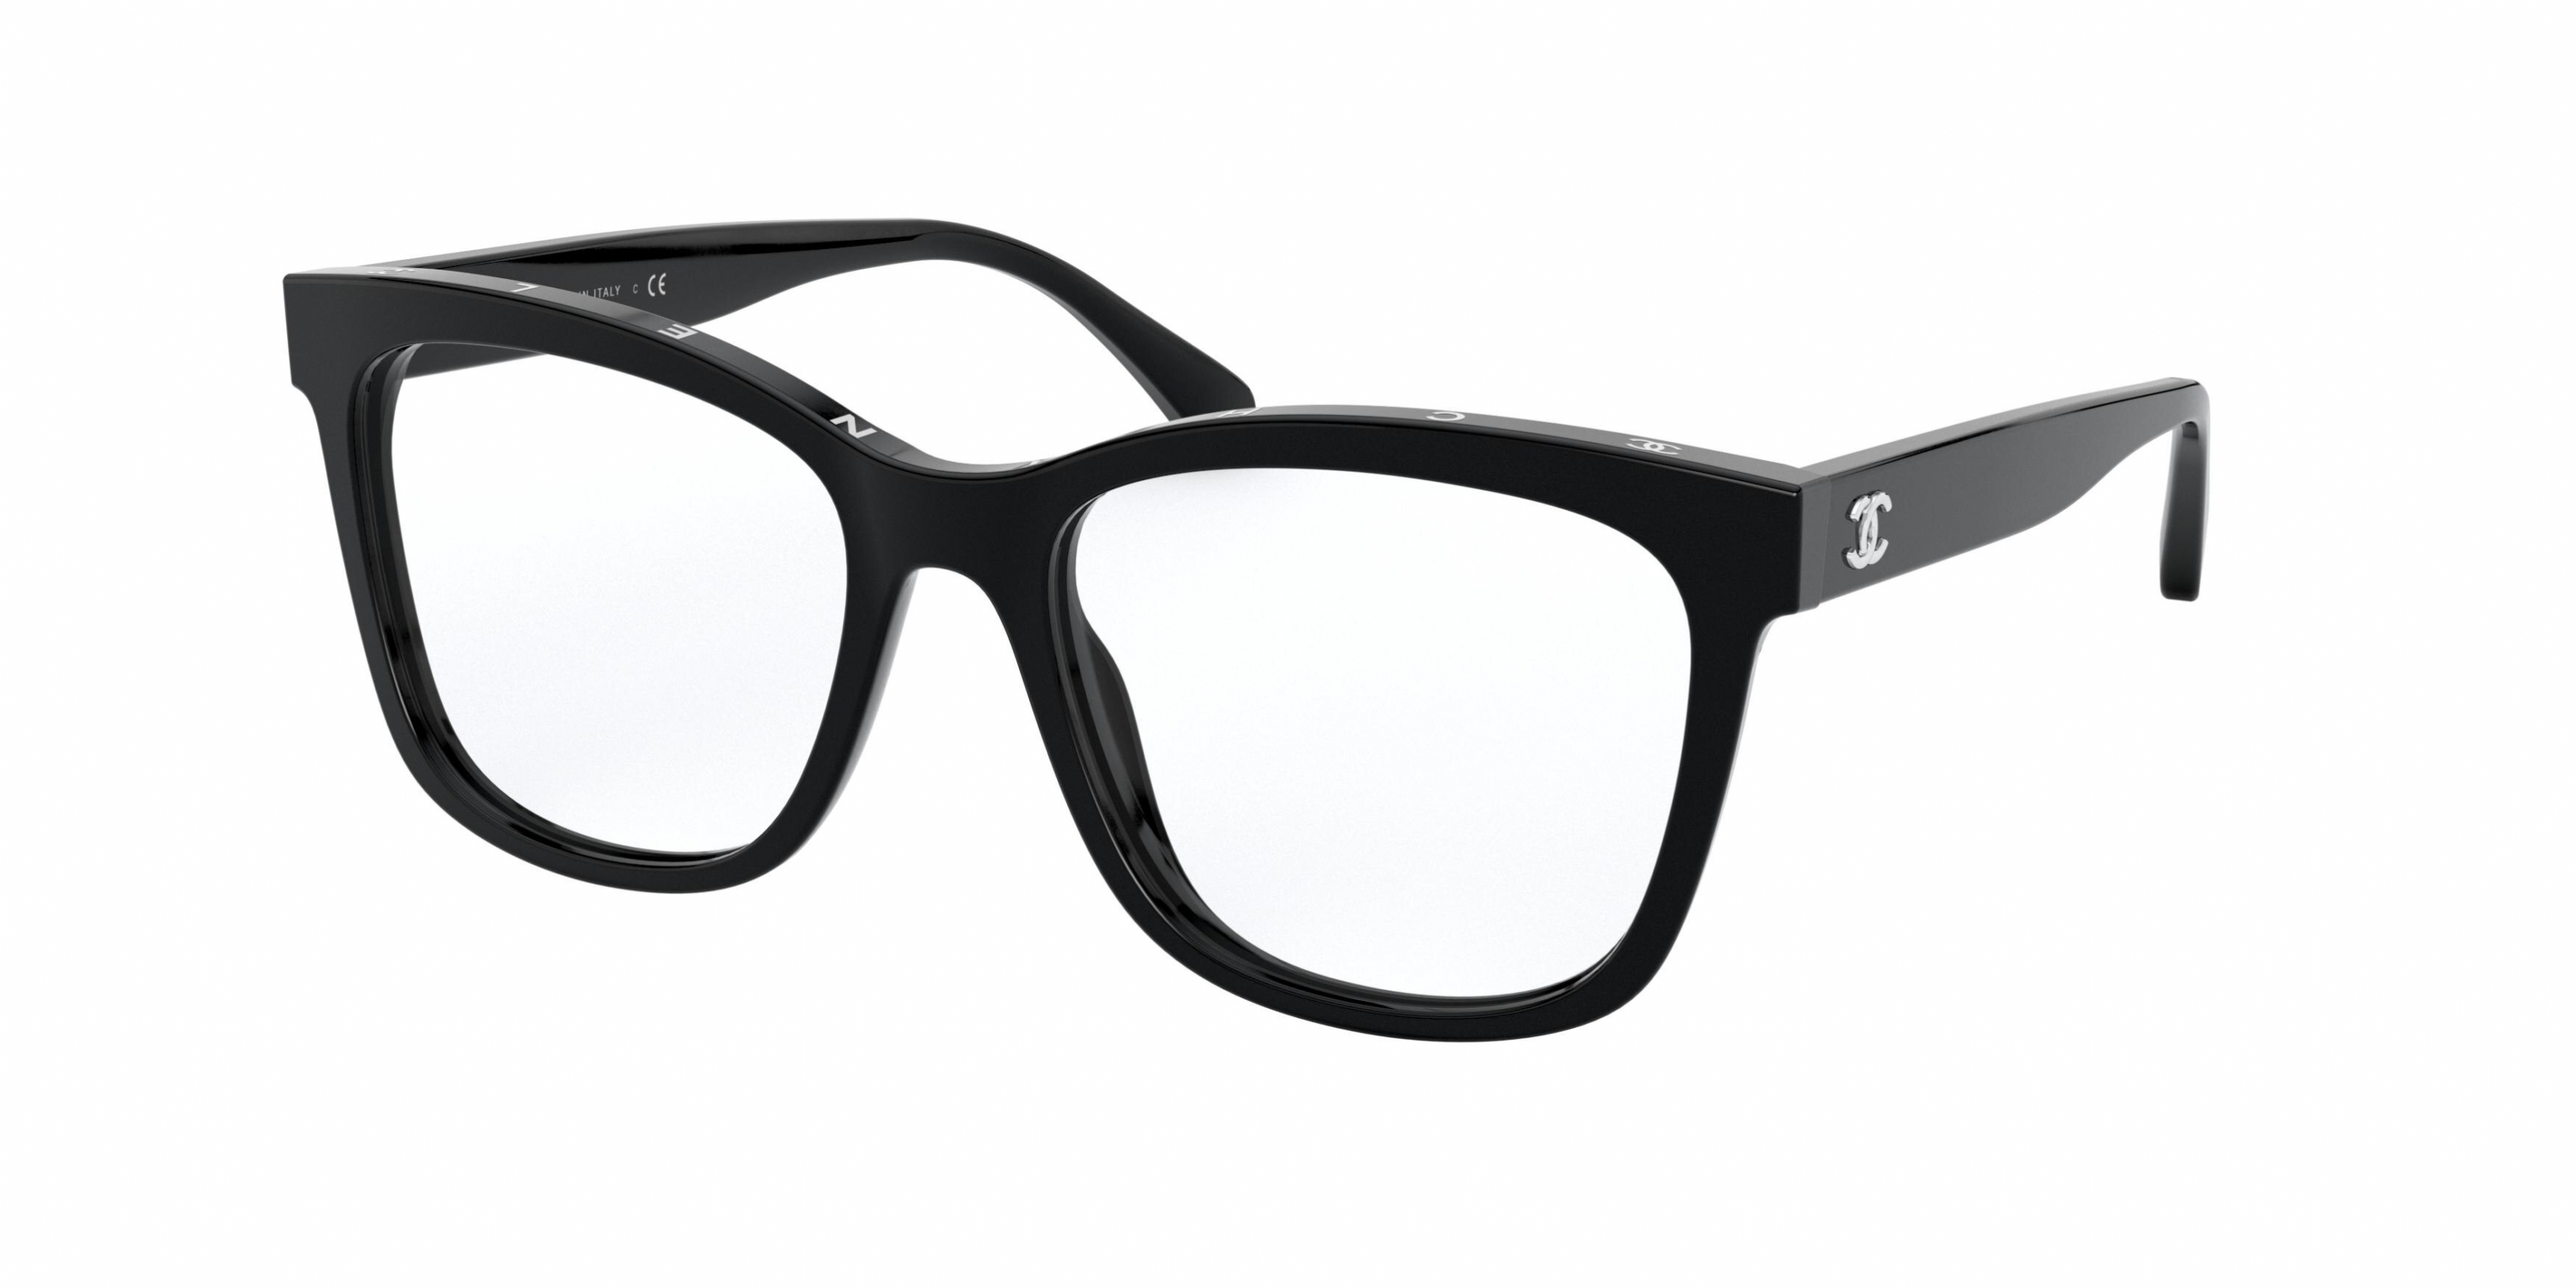 Women's full frame acetate eyeglasses, Firmoo.com